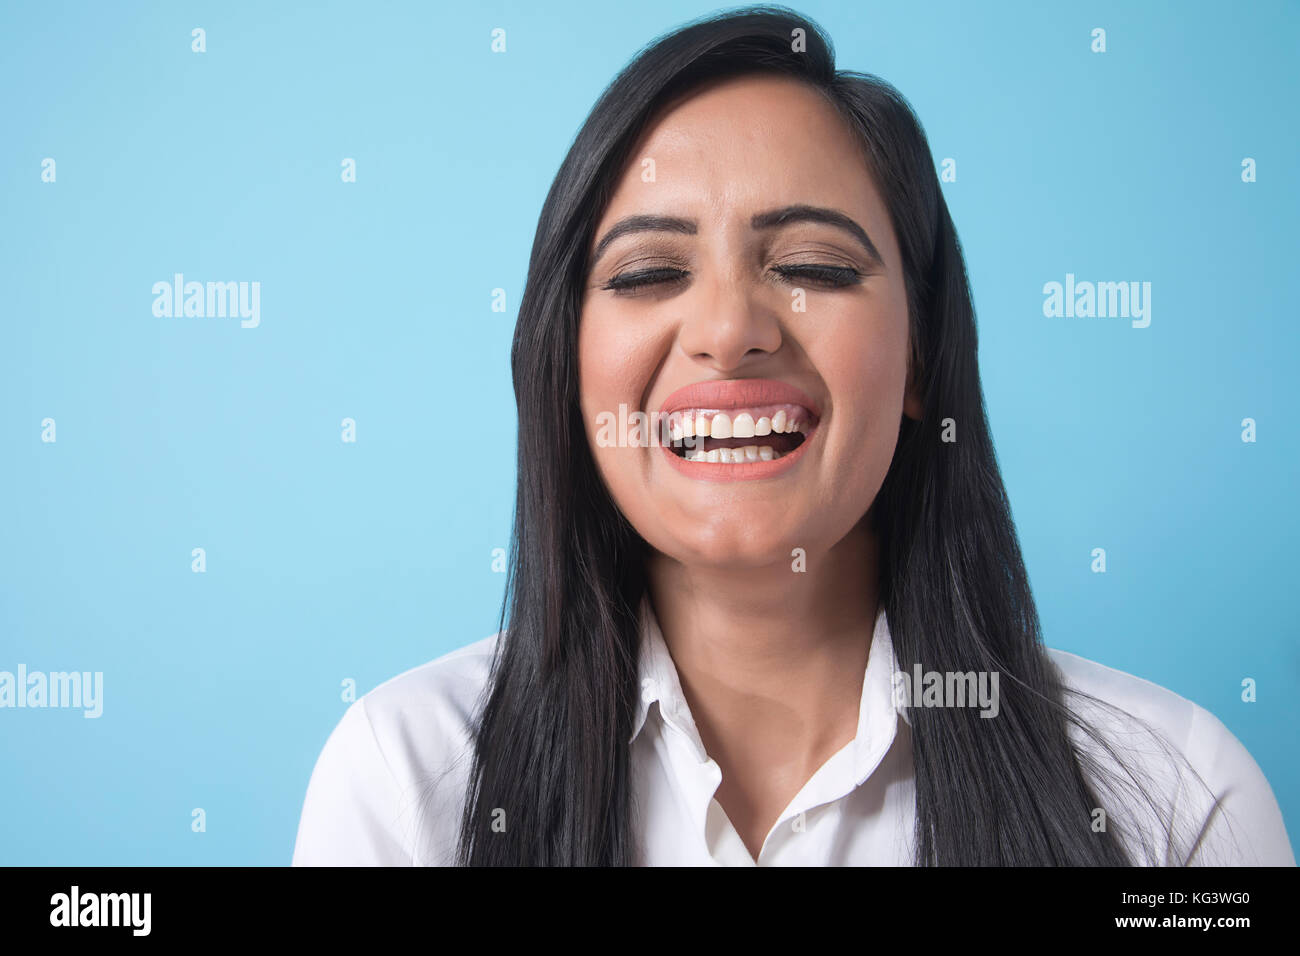 Portrait of smiling young businesswoman sur fond bleu Banque D'Images